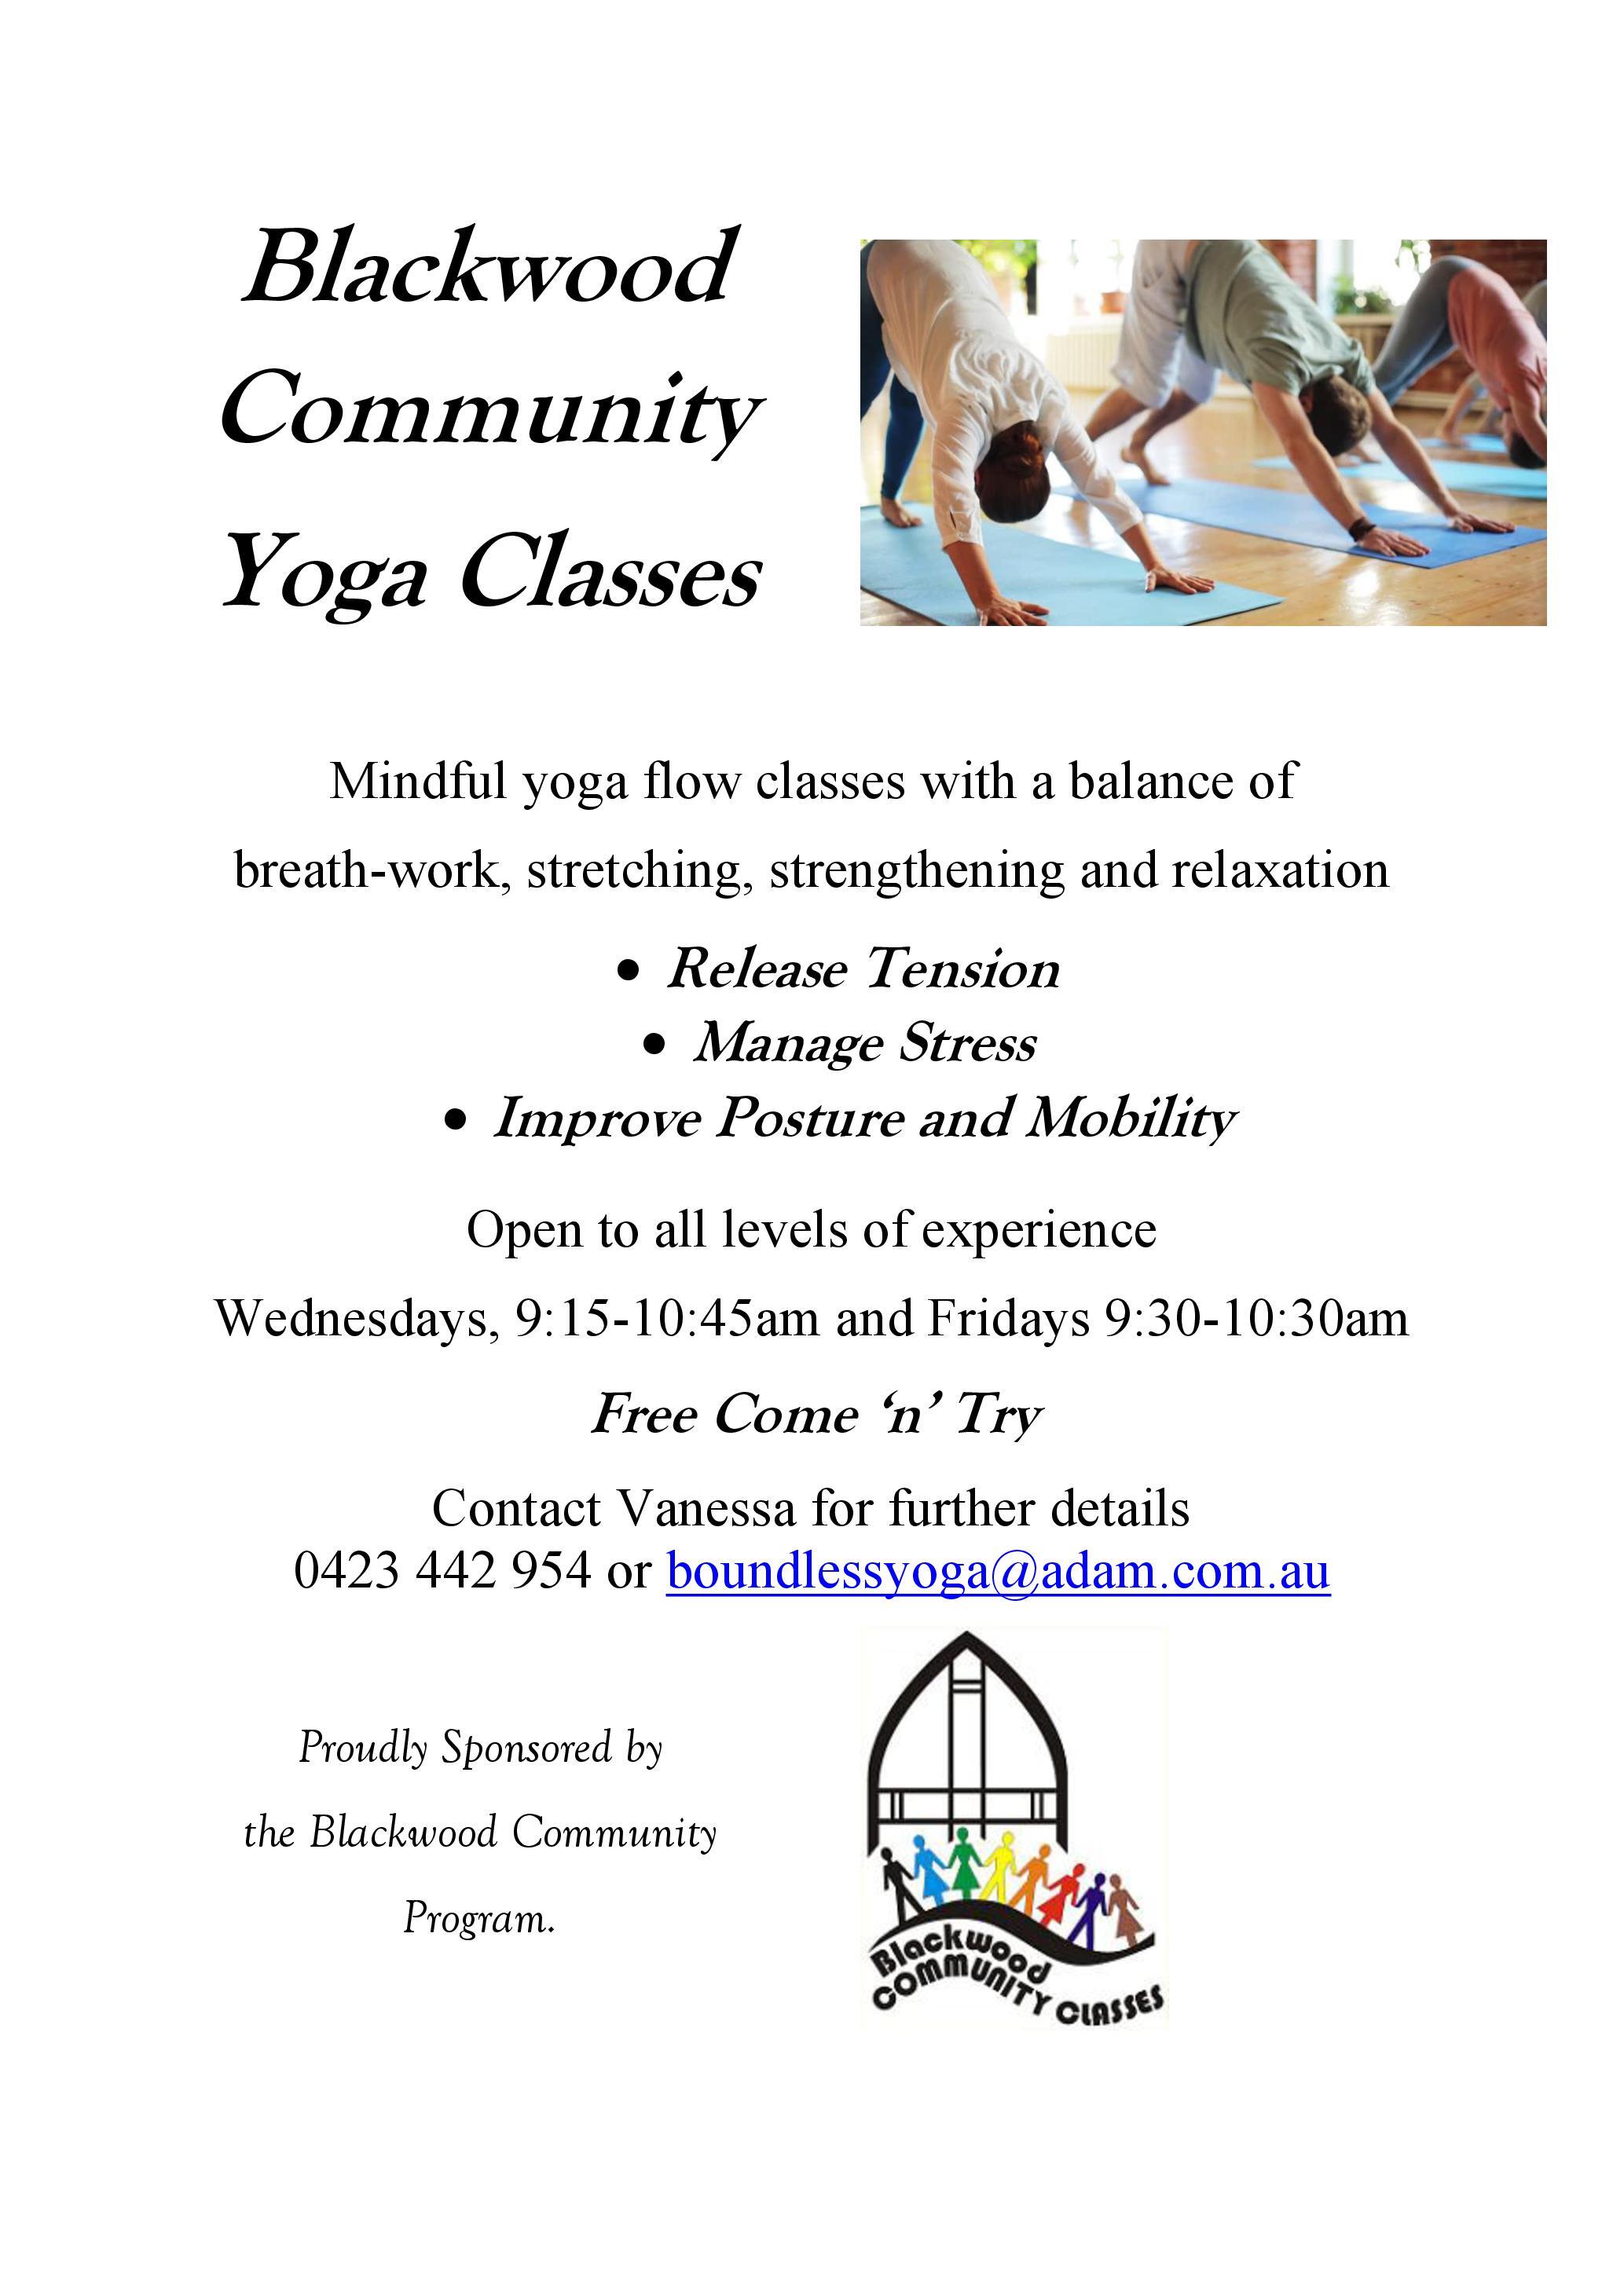 Blackwood Community Yoga Classes